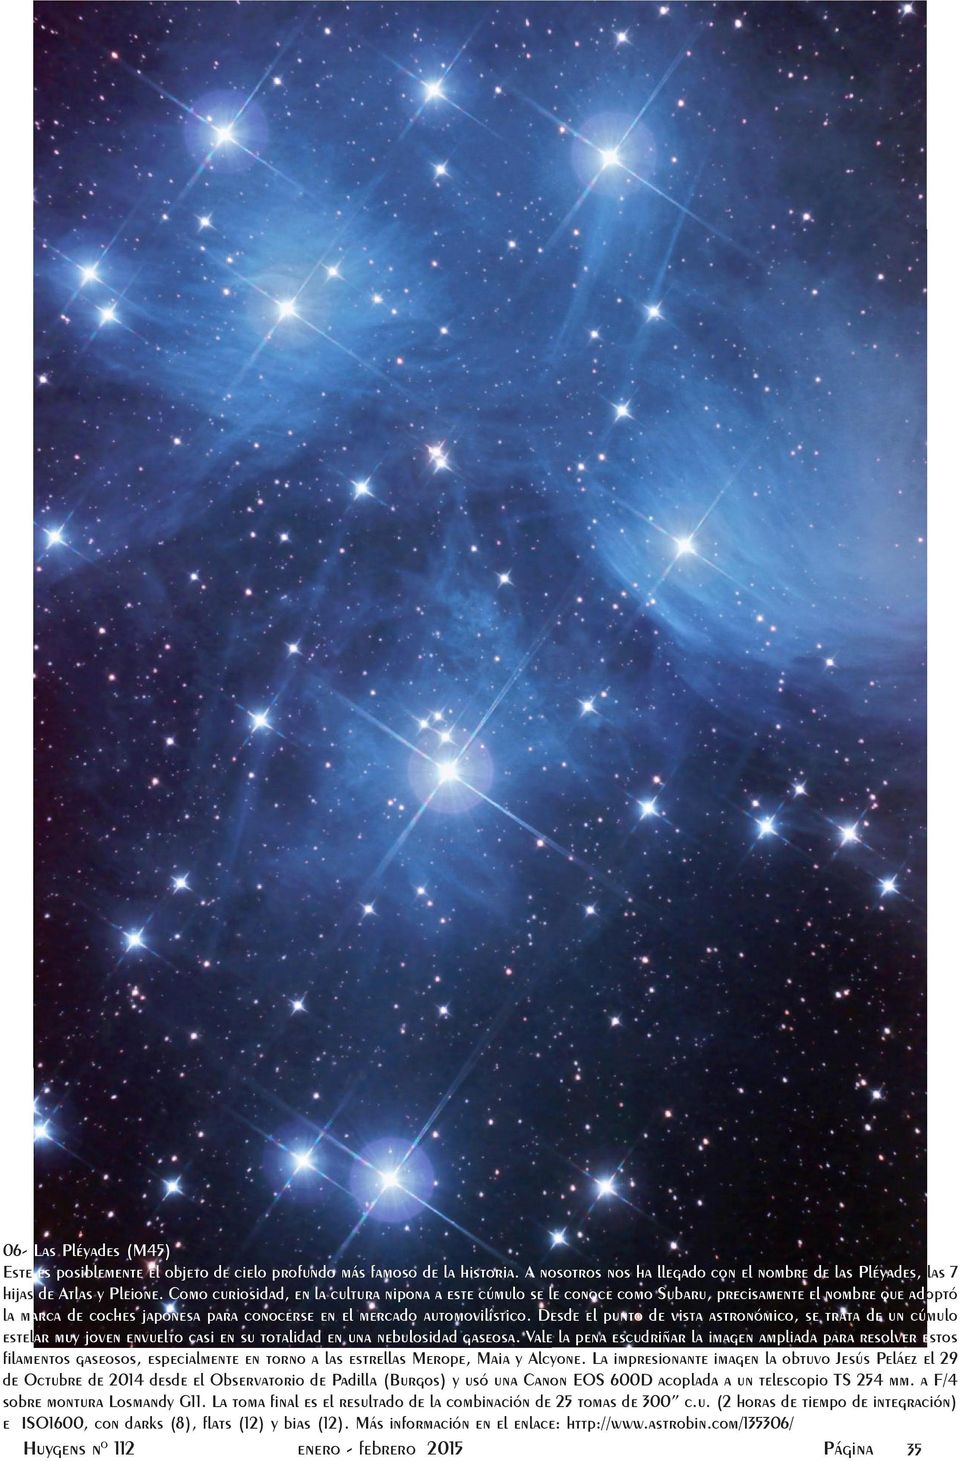 Desde el punto de vista astronómico, se trata de un cúmulo estelar muy joven envuelto casi en su totalidad en una nebulosidad gaseosa.